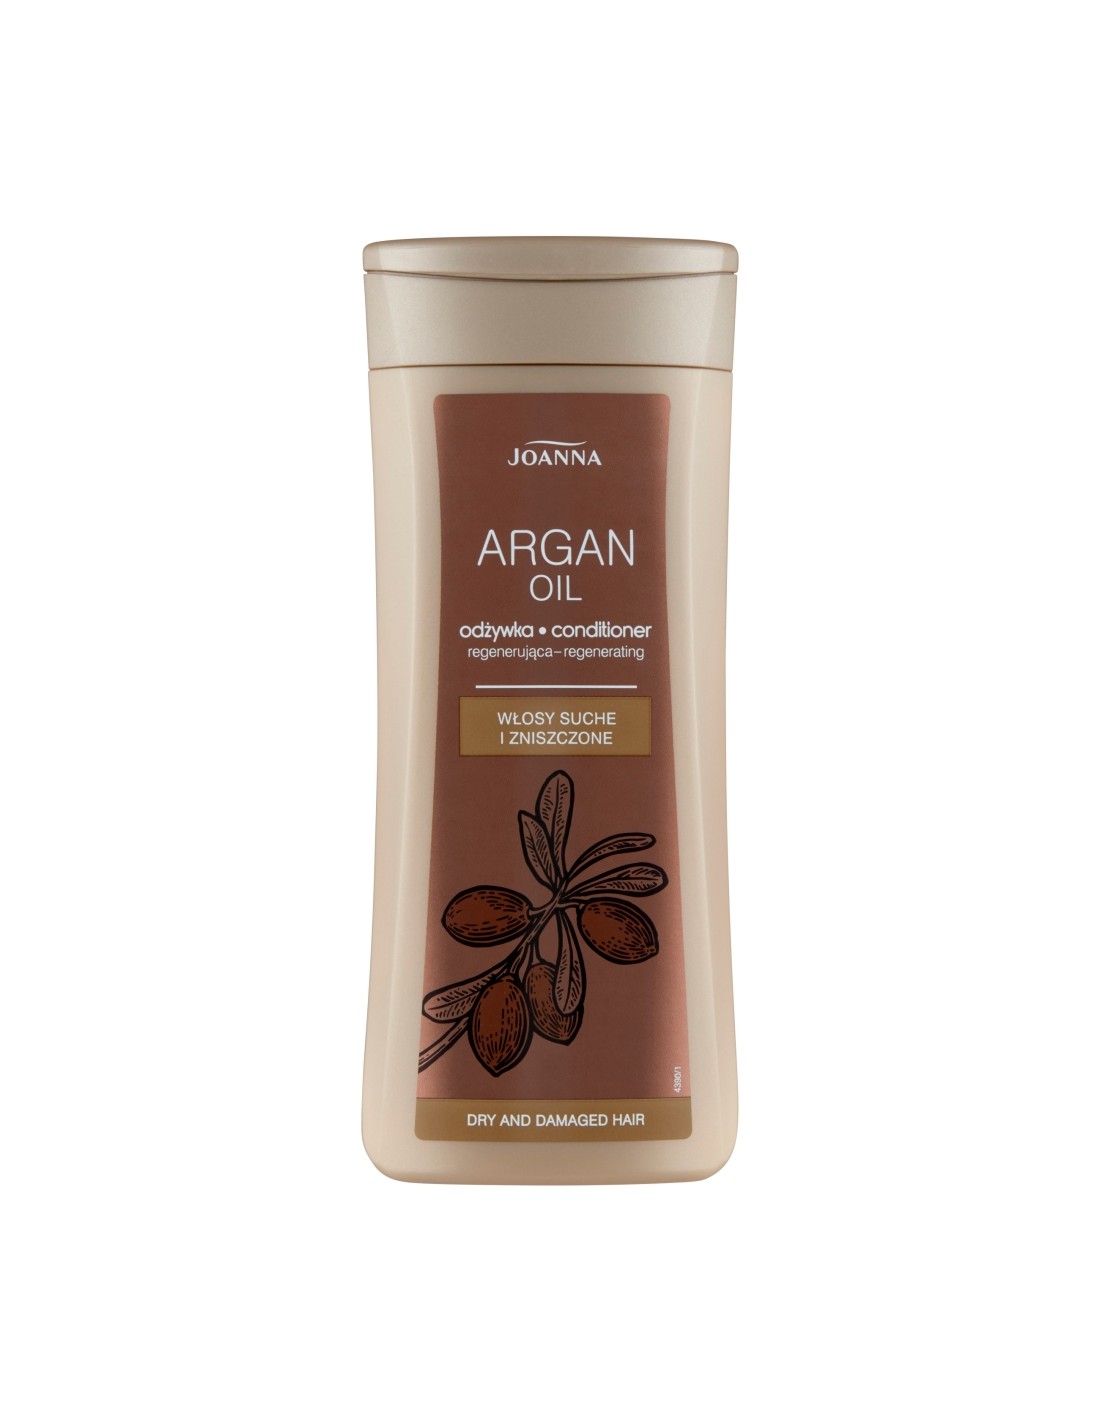 joanna argan oil odżywka do włosów suchych i zniszczonych